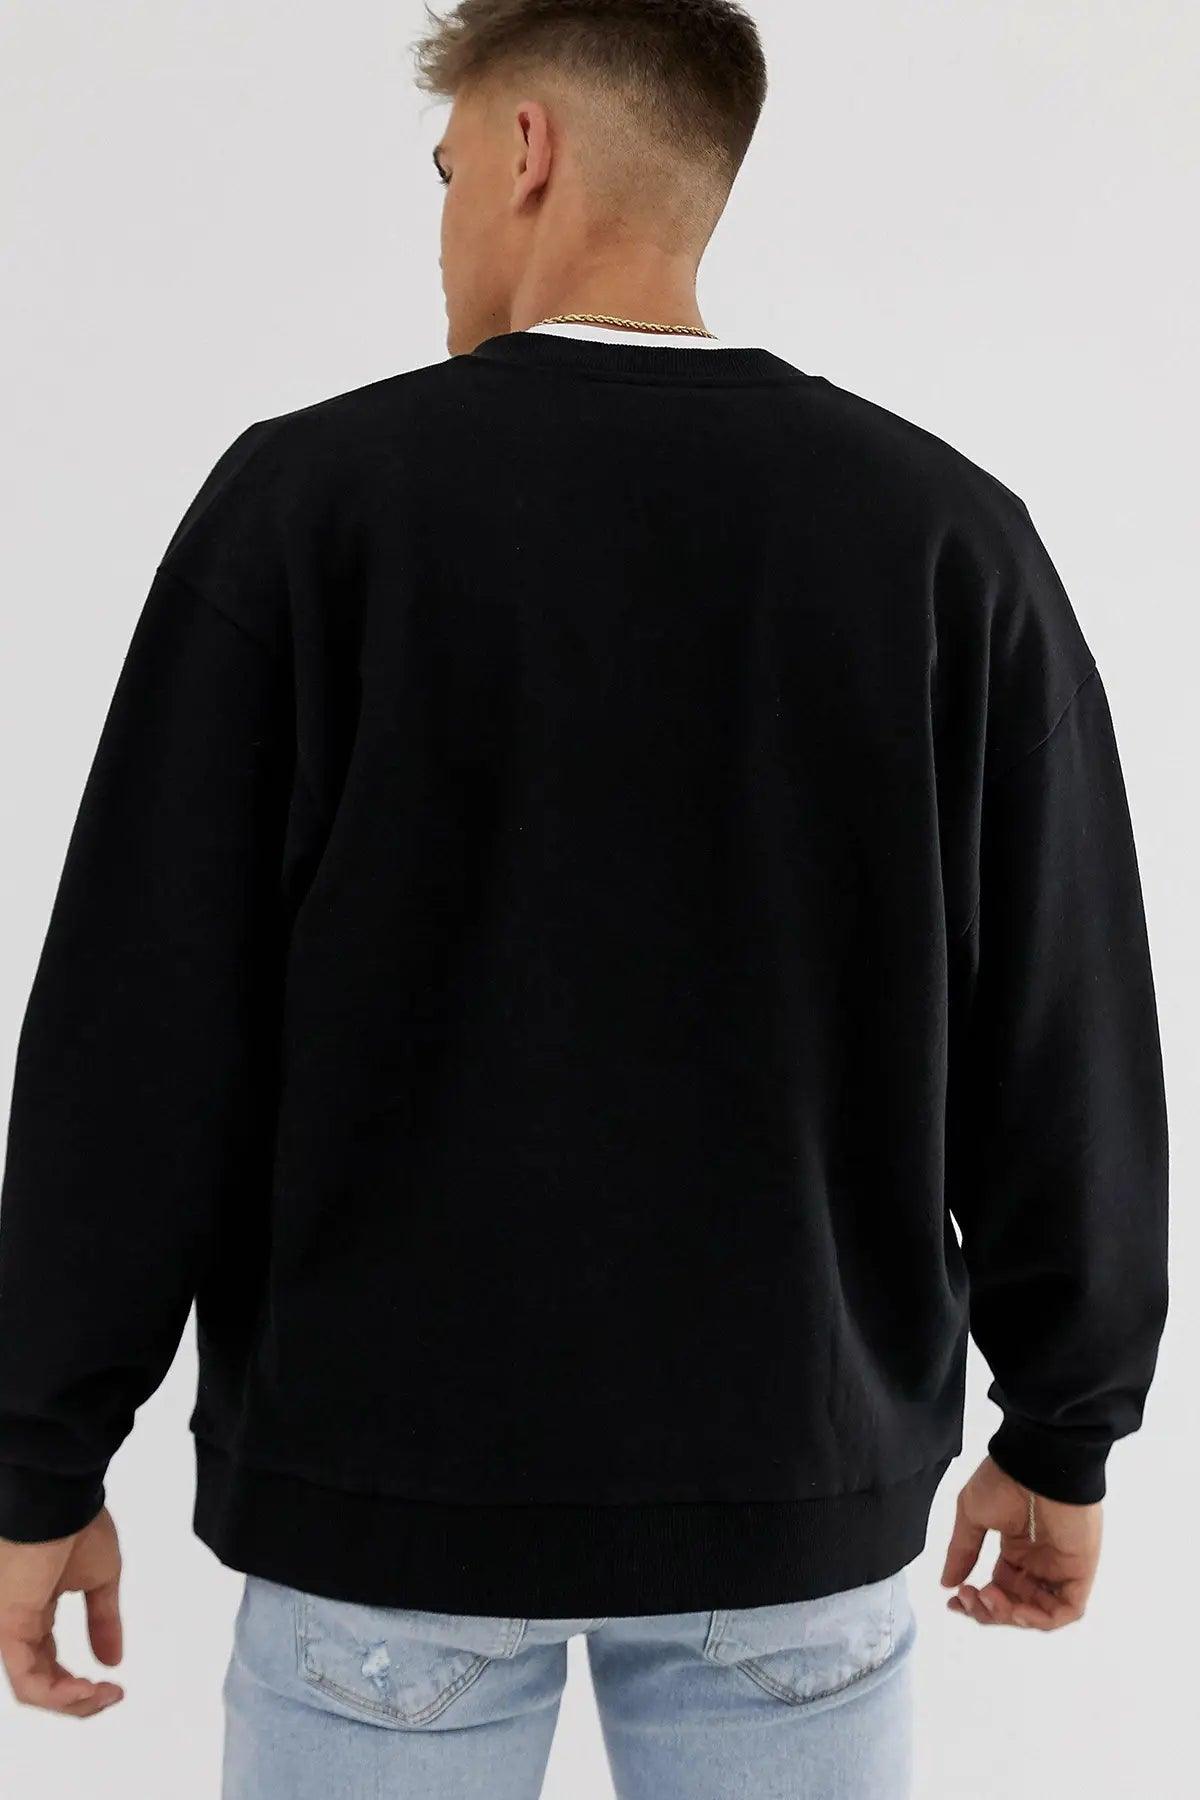 Osaka Oversize Erkek Sweatshirt - PΛSΛGE